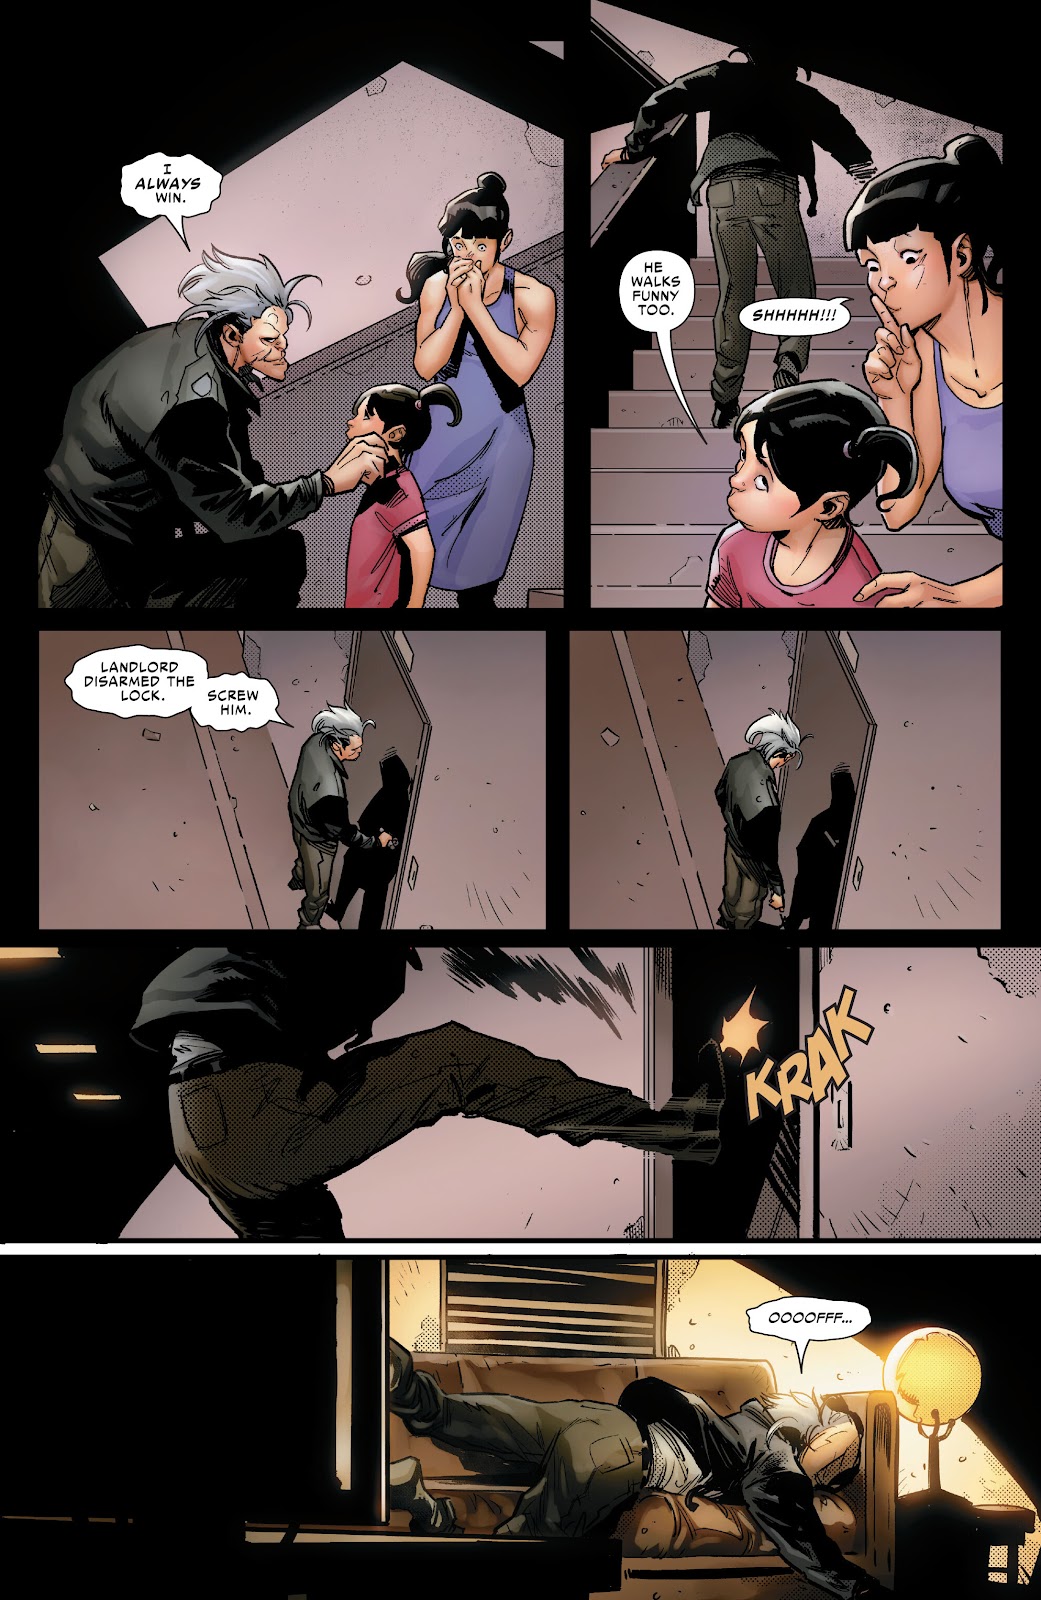 Symbiote Spider-Man 2099 issue 1 - Page 14